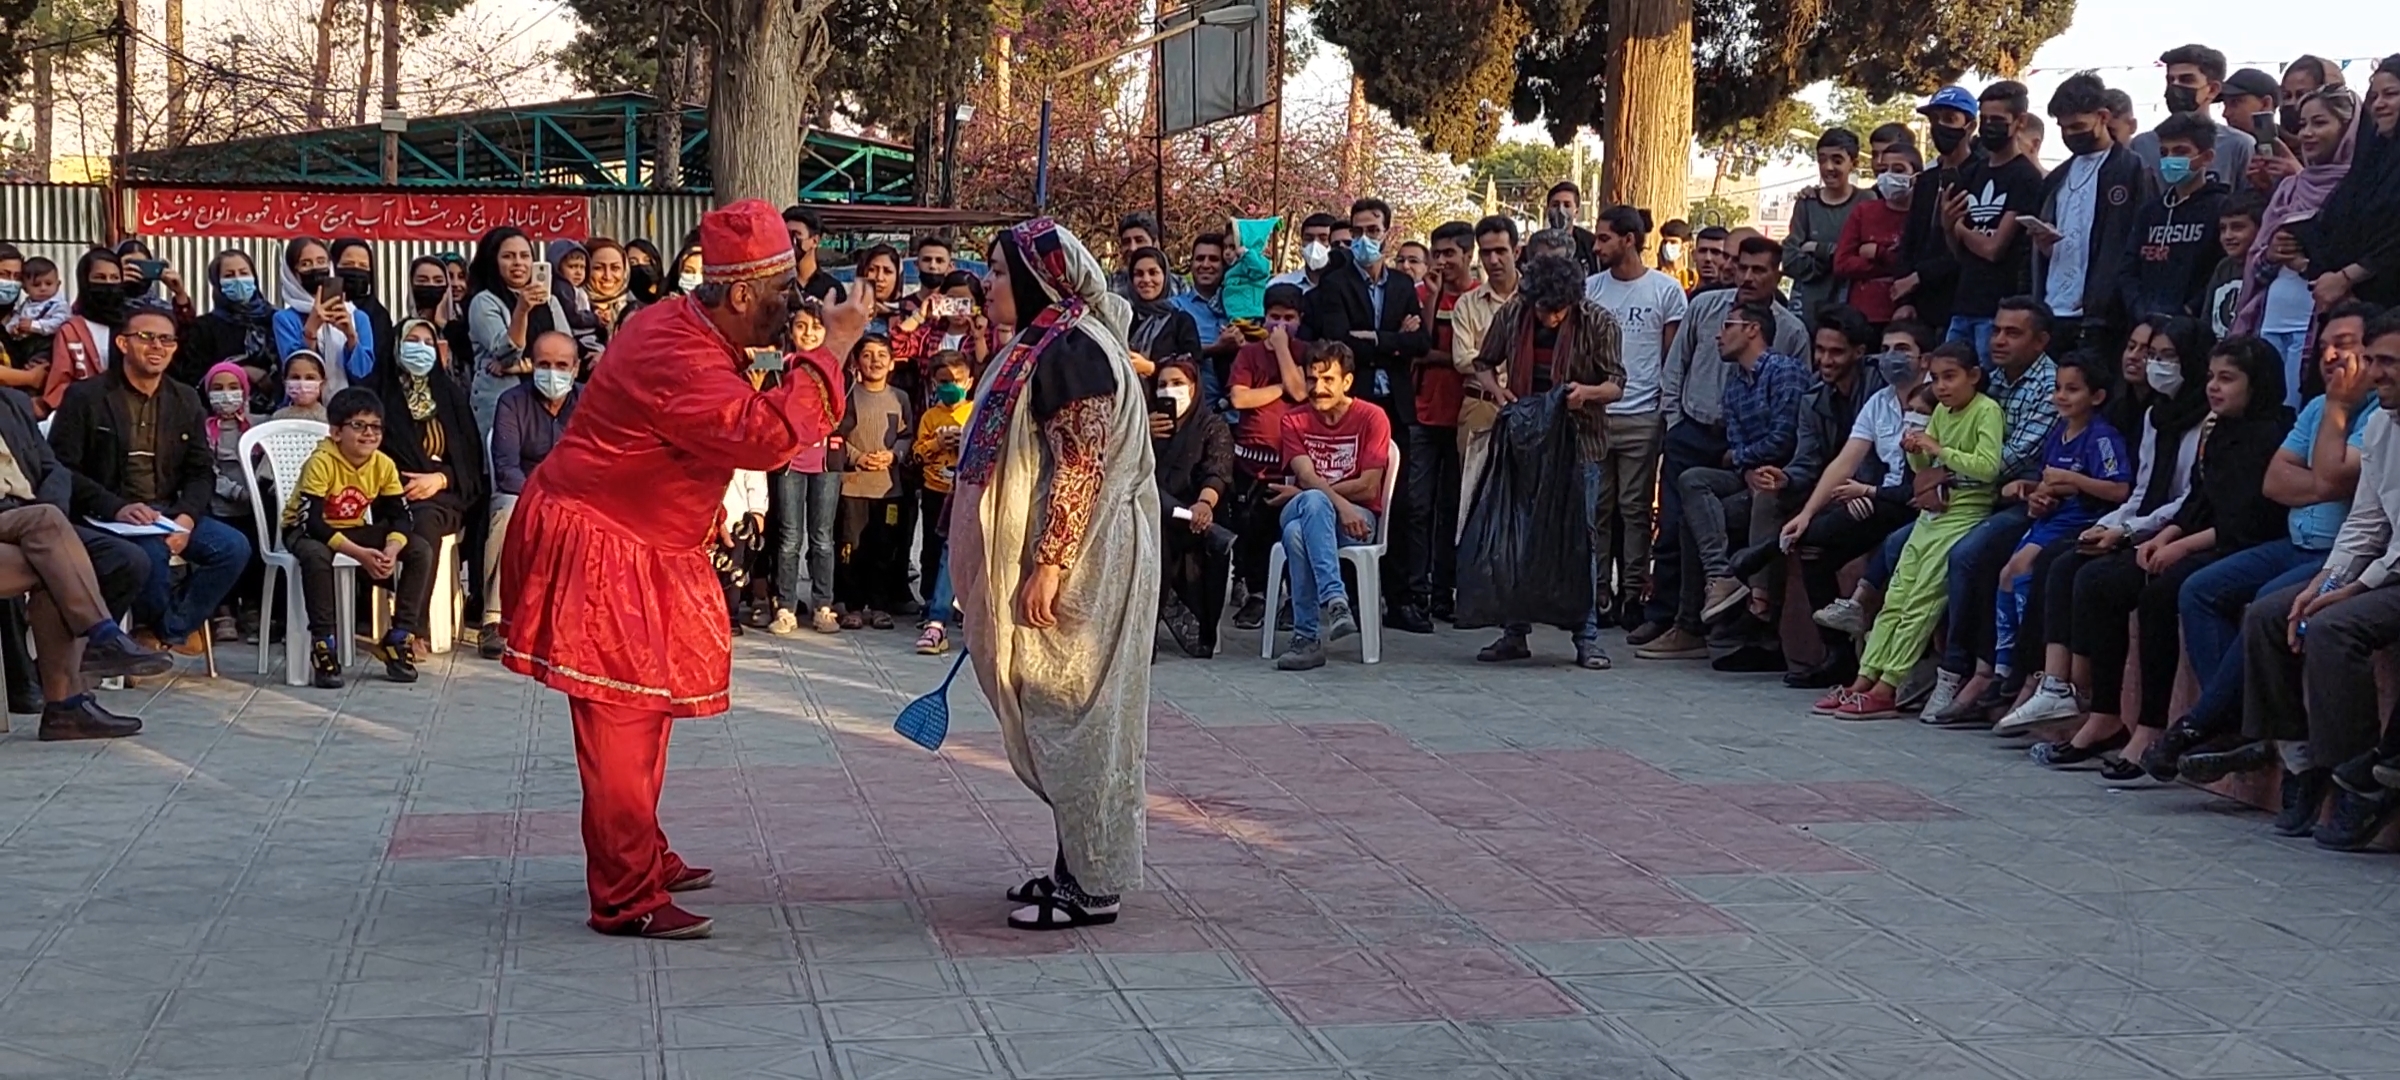 نمایش خیابانی «عمو نوروز و هفت سین» در داراب اجرا شد